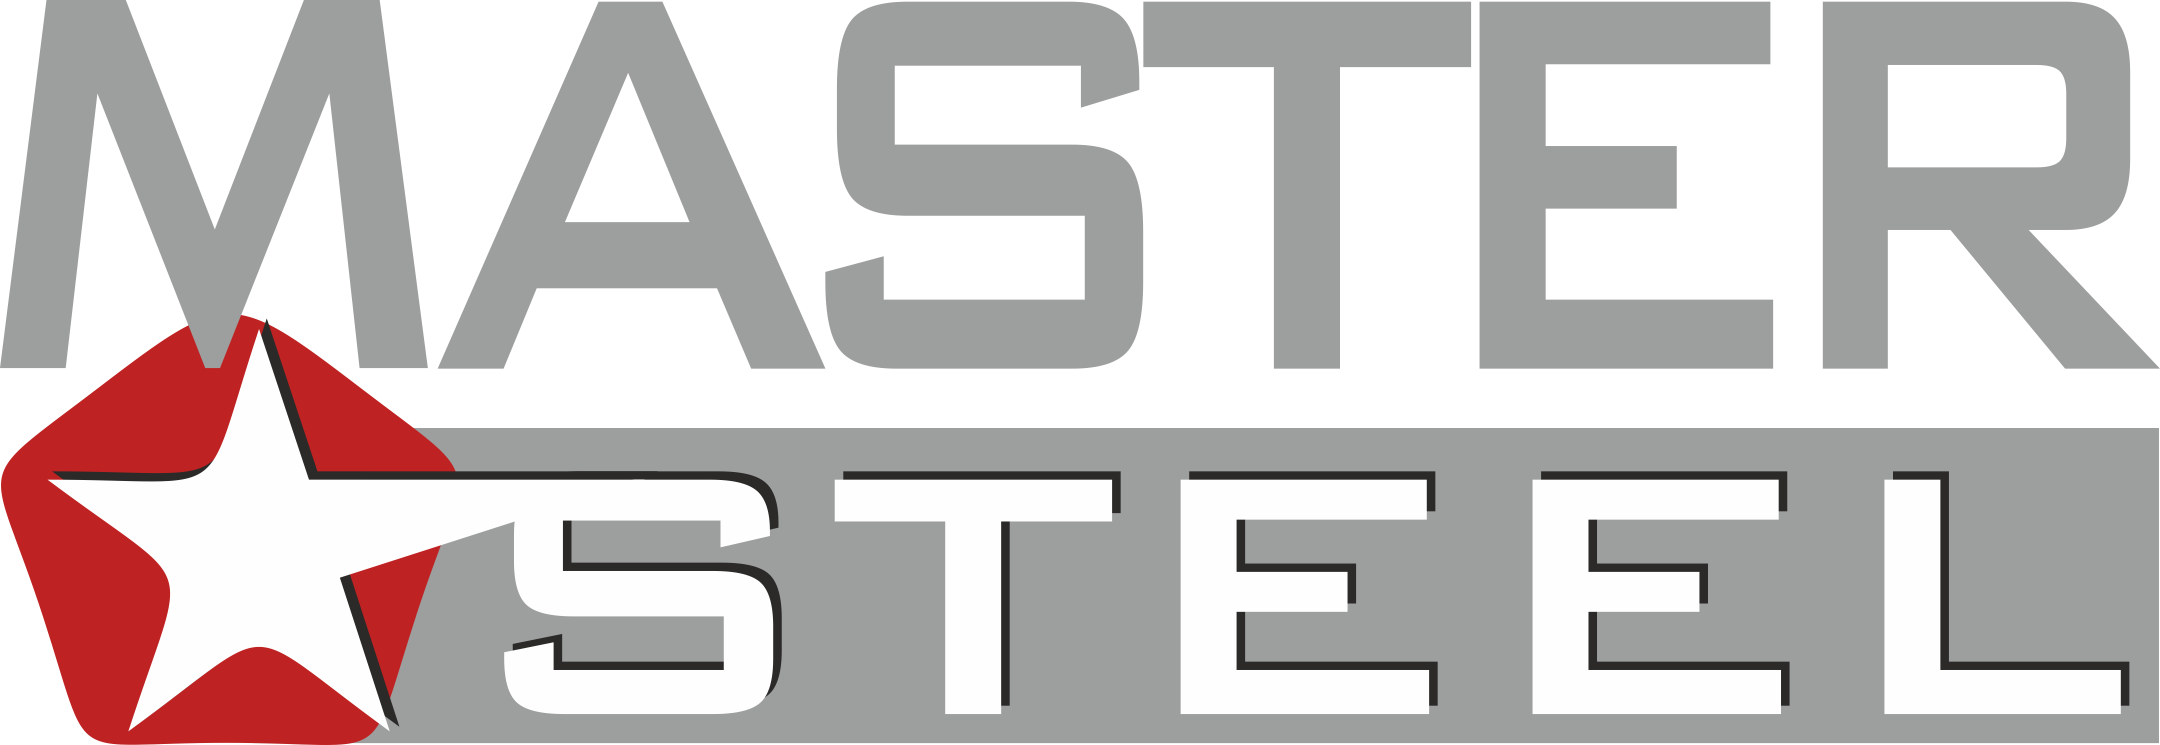 ООО Мастерс. Steel Master качество в деталях. Сталь-мастер производитель. Steel Master logo.